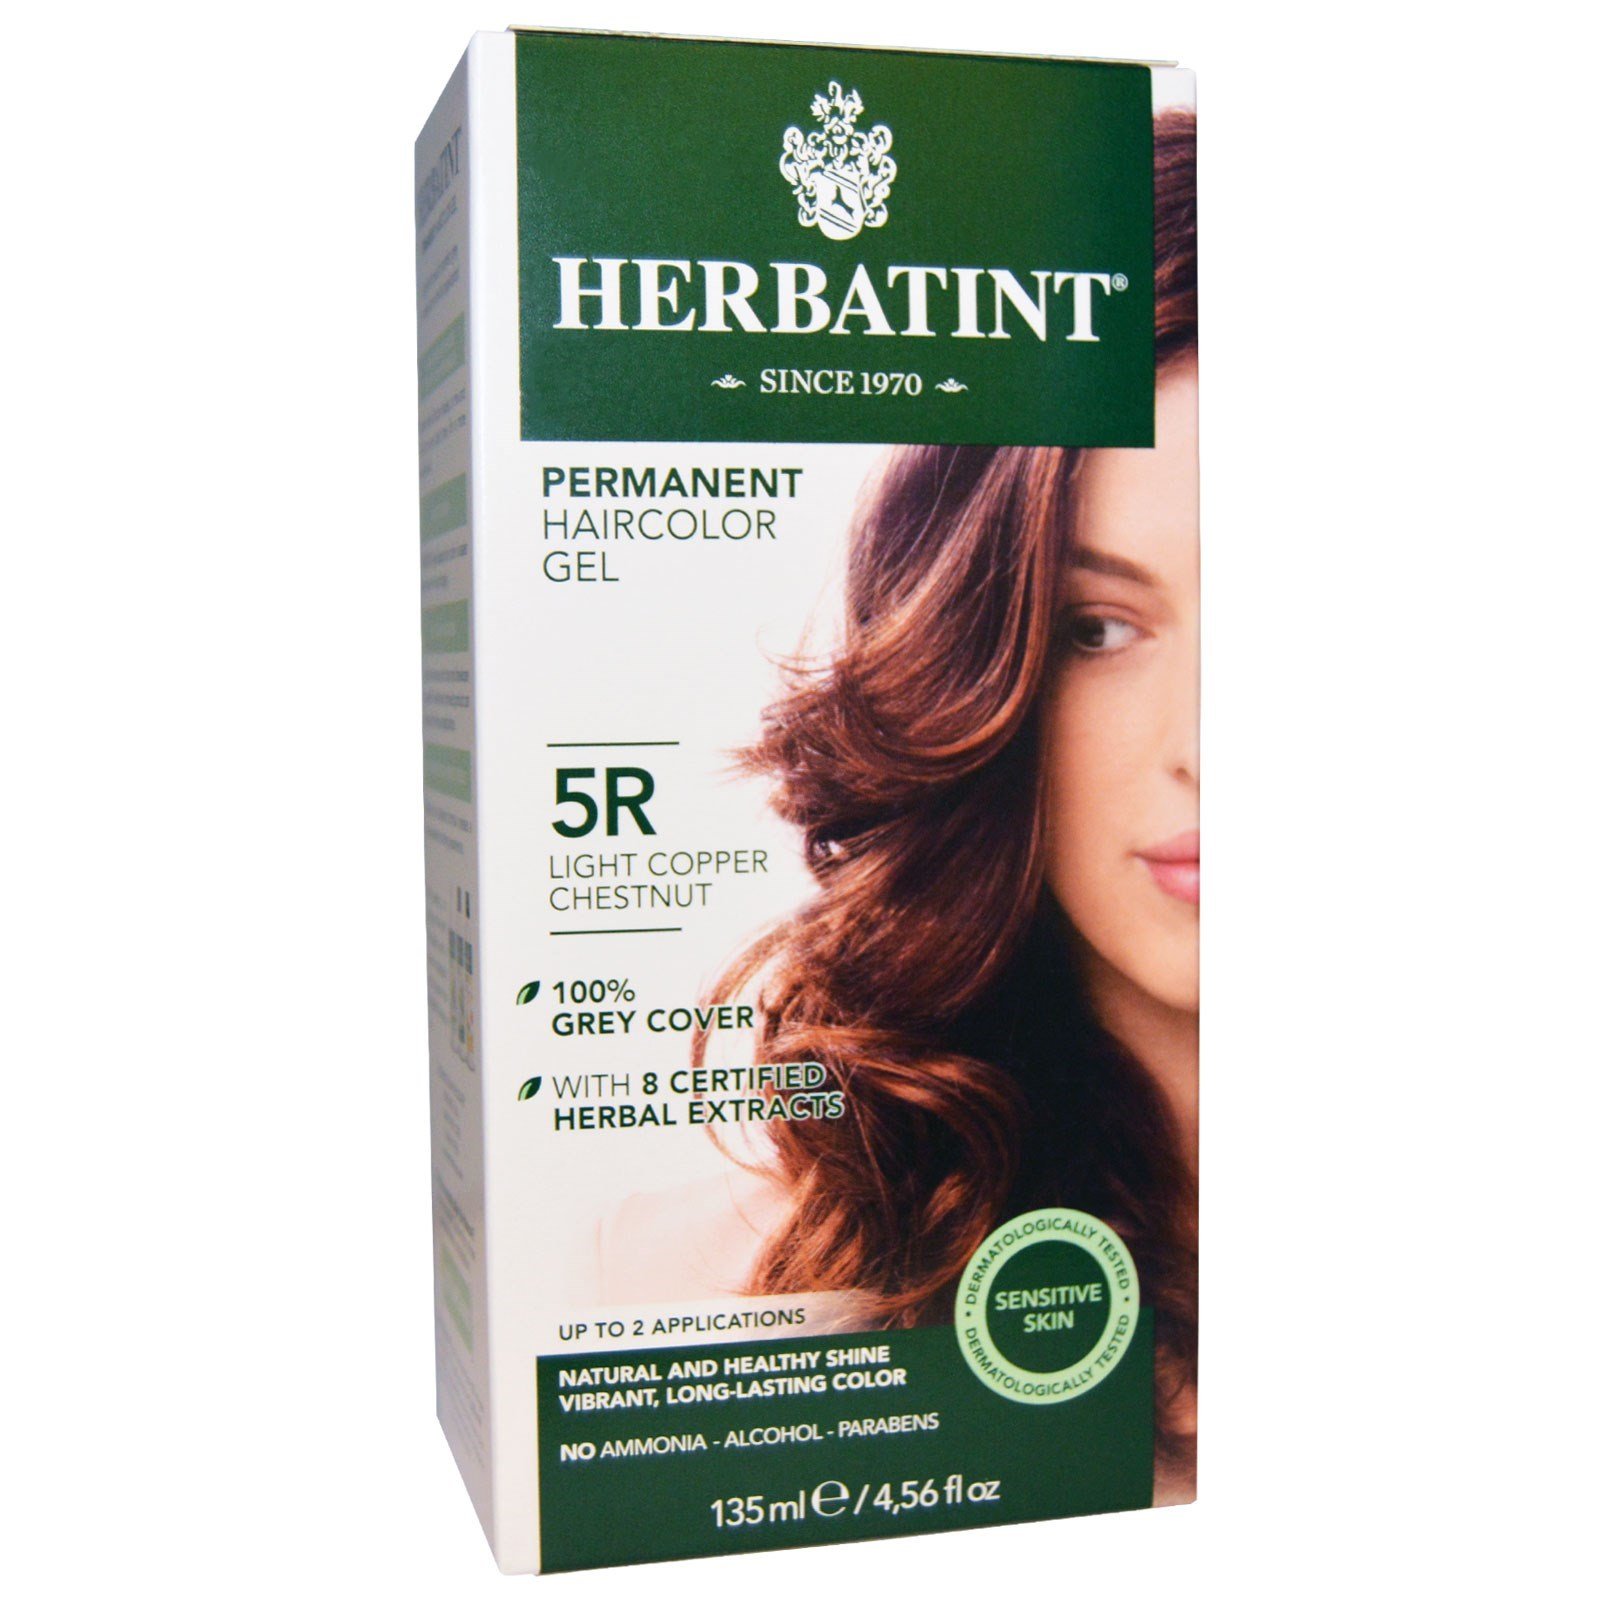 Herbatint 5R Permanent Herbal Light Copper Chestnut Haircolor Gel Kit - 3 per case.